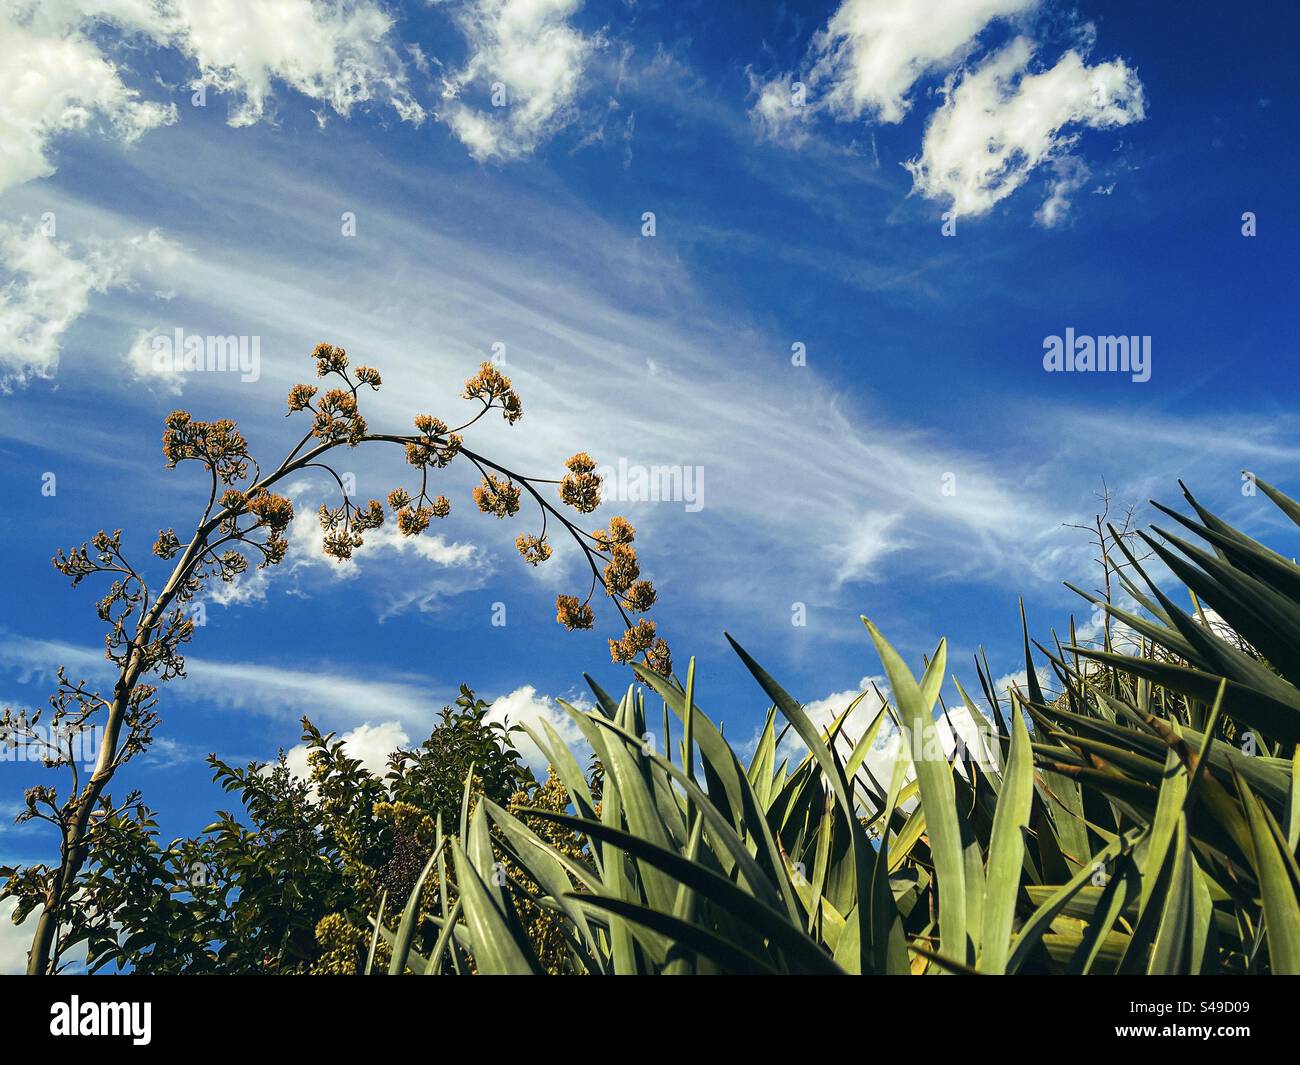 Vue en angle bas de la tige de plante agave en fleurs et des arbustes de Dracaena contre les nuages de cirrus dans le ciel bleu. Paysage. Beauté dans la nature. Banque D'Images